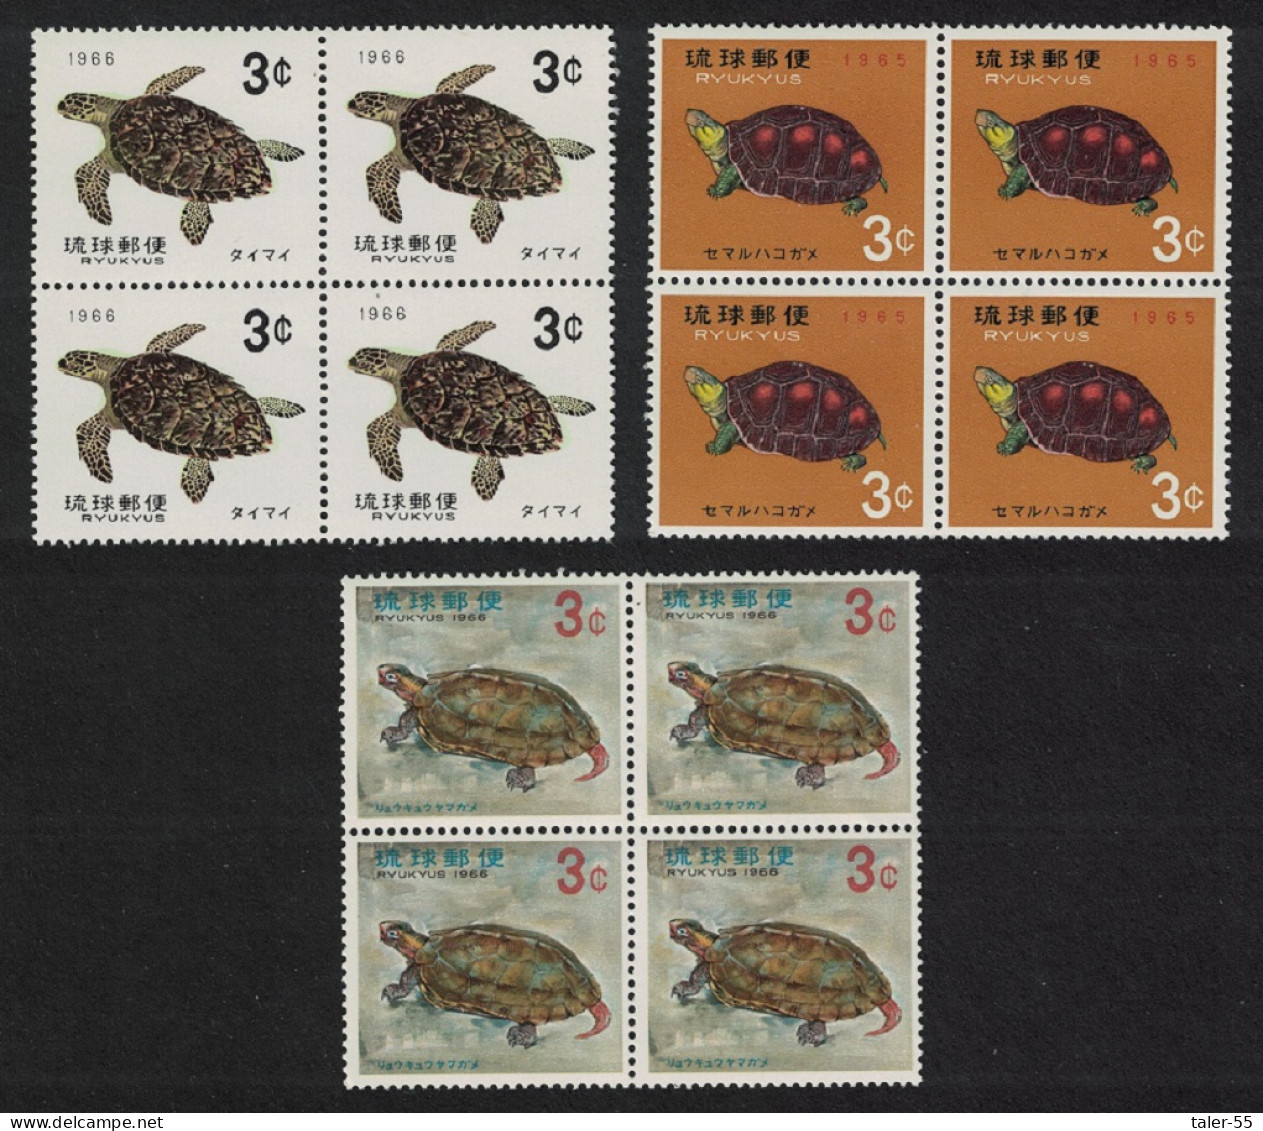 Ryukyu Turtles 3v Blocks Of 4 1965 MNH SG#171-173 Sc#136-138 - Ryukyu Islands